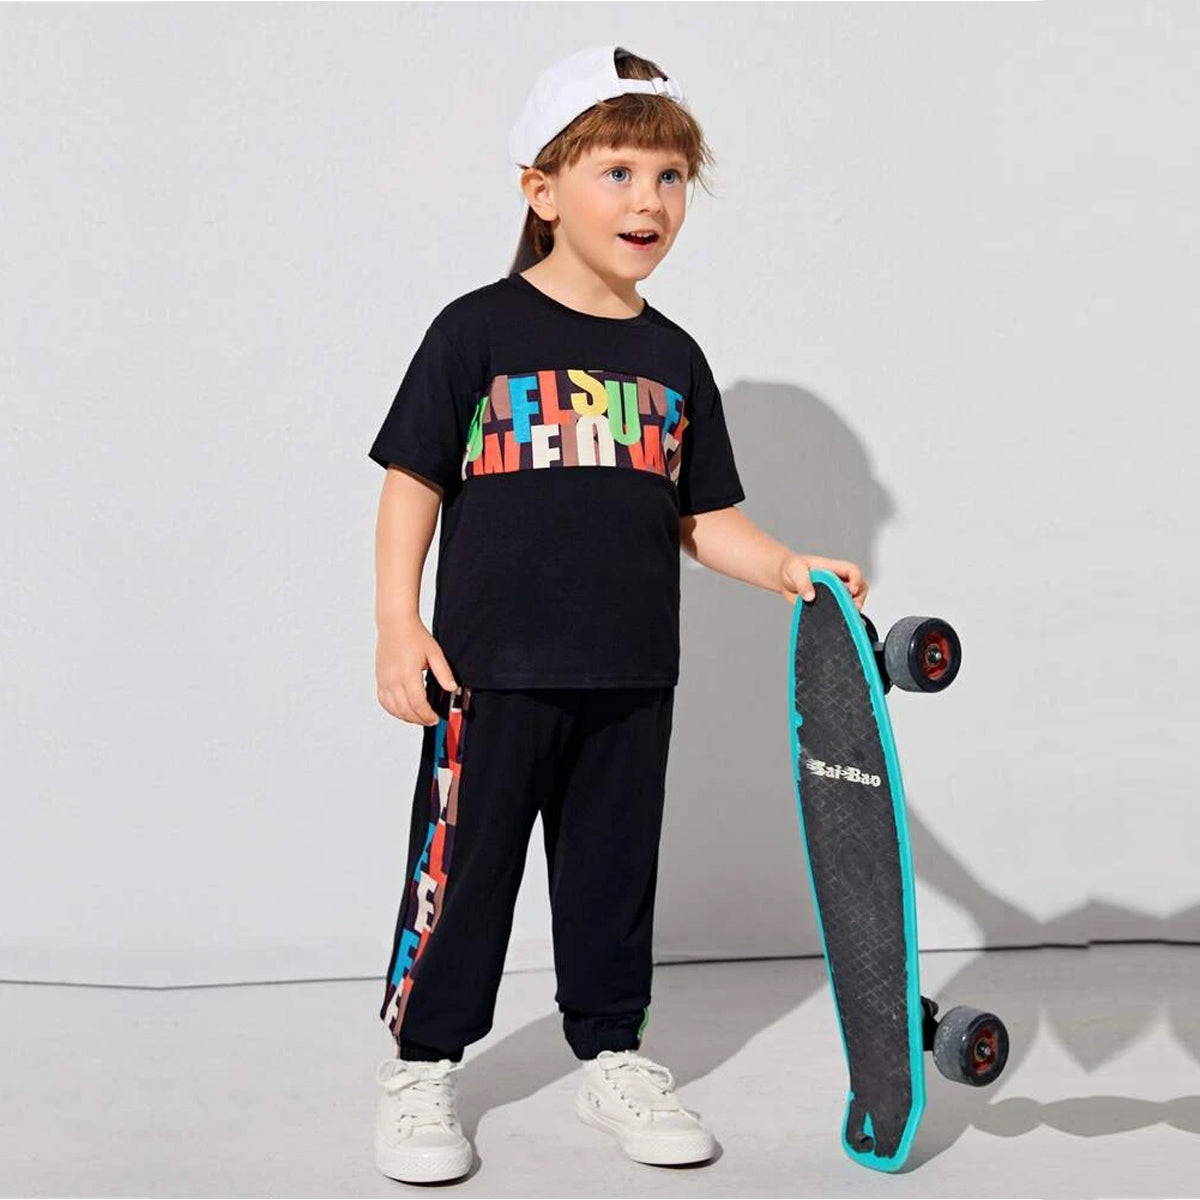 Venutaloza Toddler Boys letter Graphic T-Shirt & Pants Set.